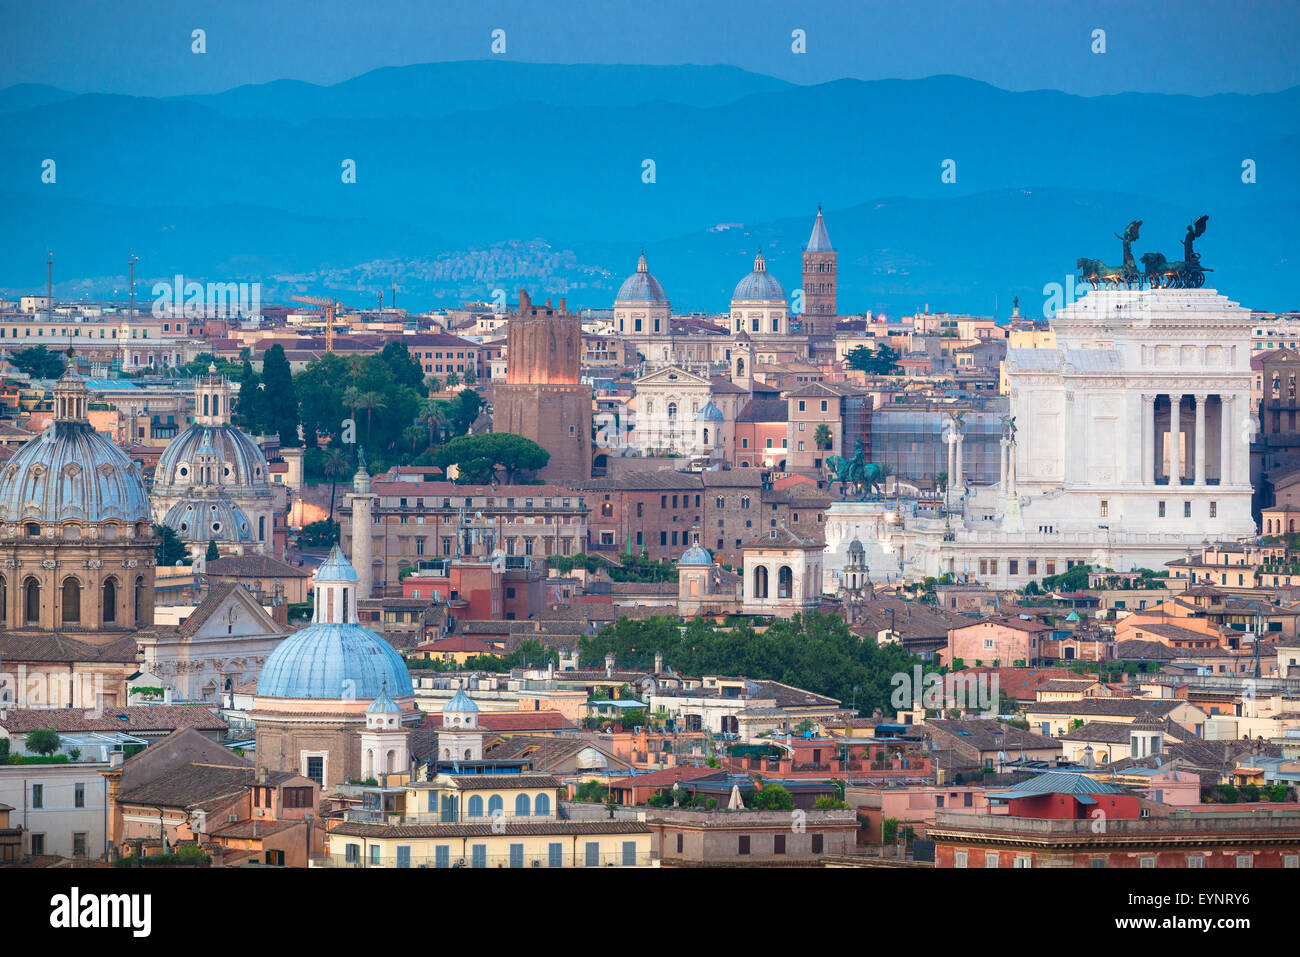 Stadtbild von Rom, Luftaufnahme des Centro Storico - historisches Zentrum - von Rom aus dem Westen der Stadt bei Dämmerung, Italien. Stockfoto